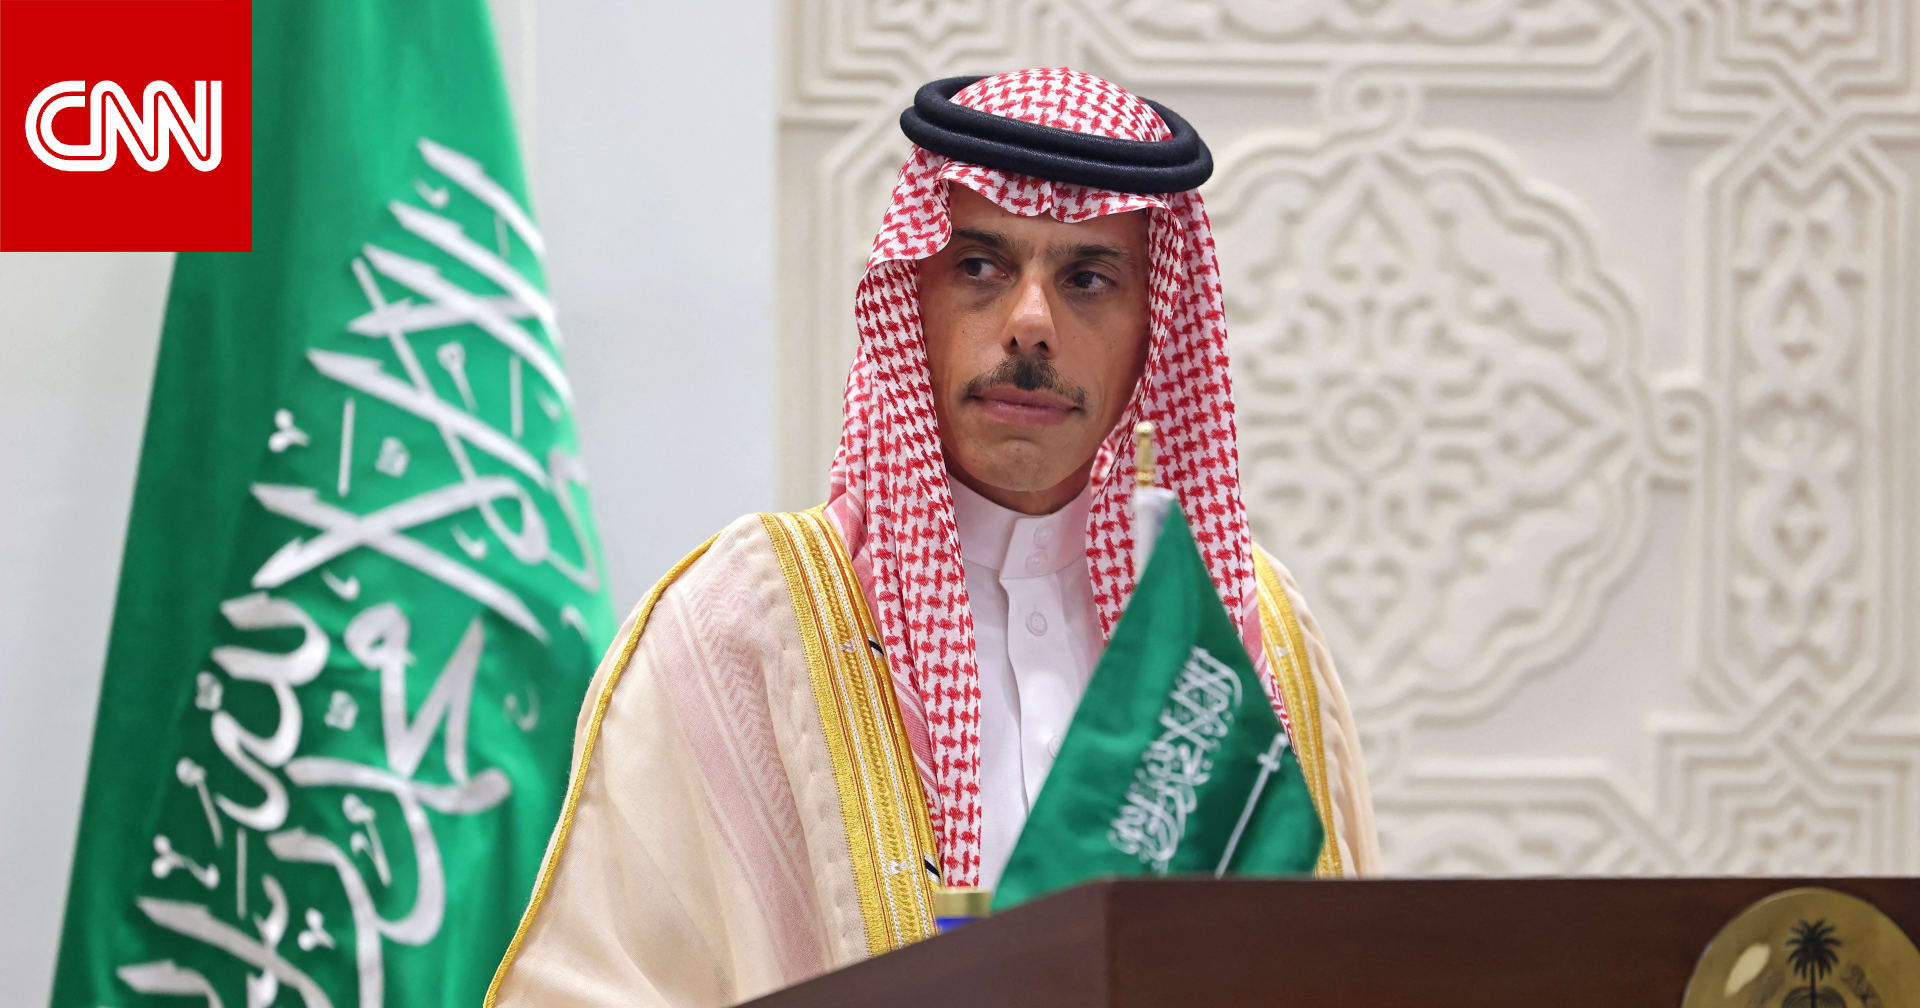 وزير خارجية السعودية ردًا على سؤال: "أي مستقبل أتحدث عنه وغزة تدمر وكل ساعة يموت العشرات"